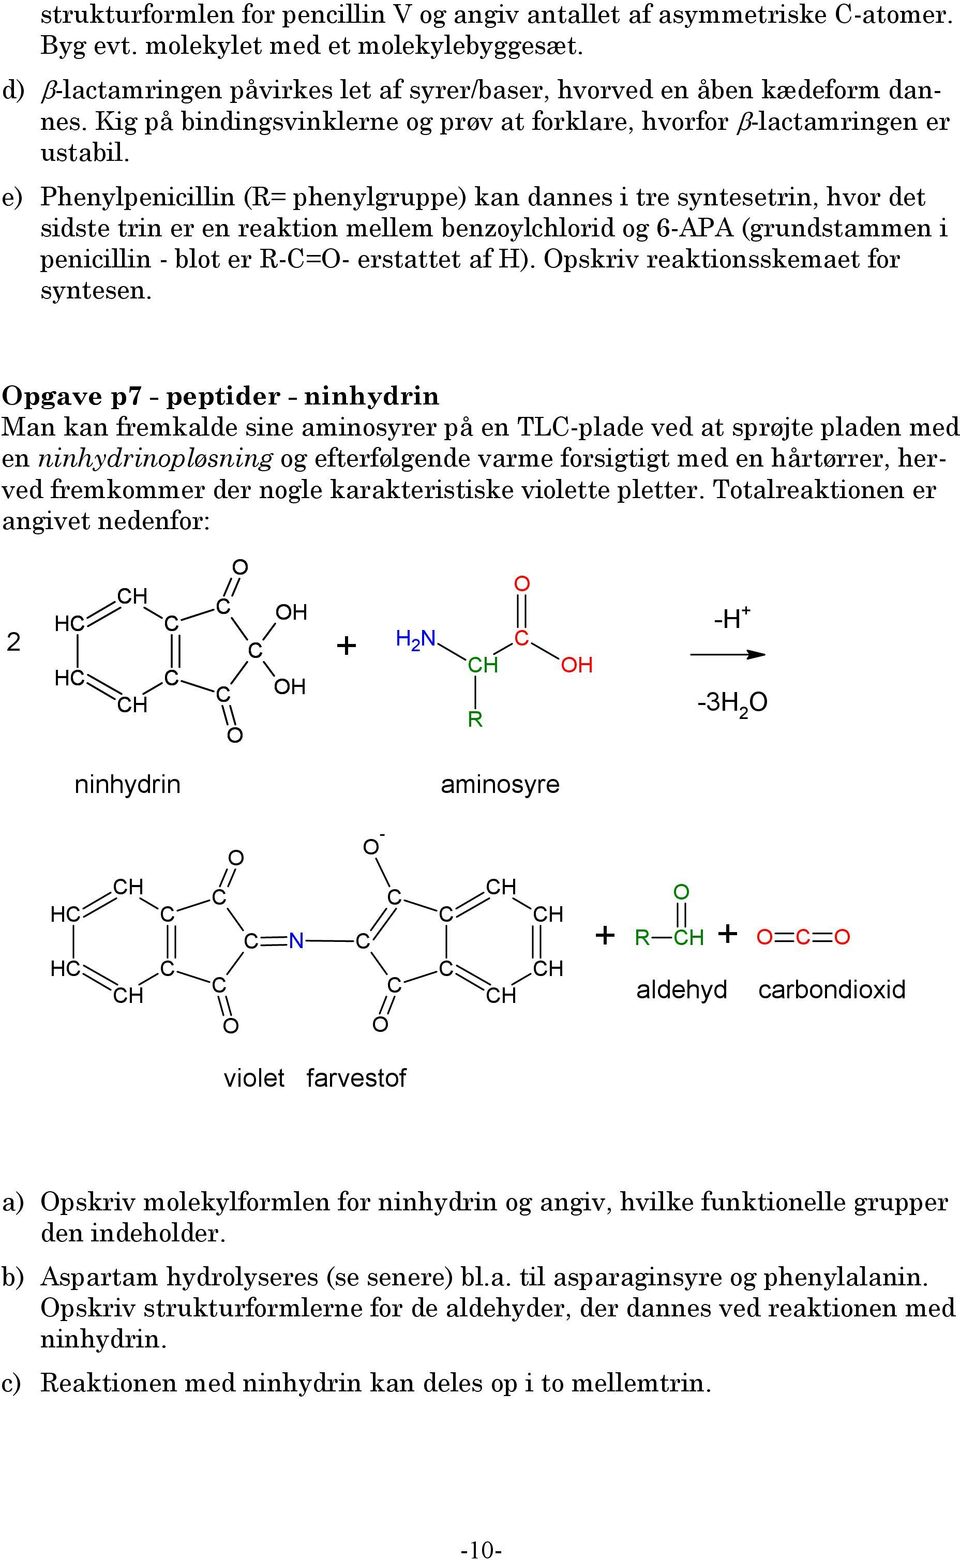 e) Phenylpenicillin (= phenylgruppe) kan dannes i tre syntesetrin, hvor det sidste trin er en reaktion mellem benzoylchlorid og 6-APA (grundstammen i penicillin - blot er -=- erstattet af H).